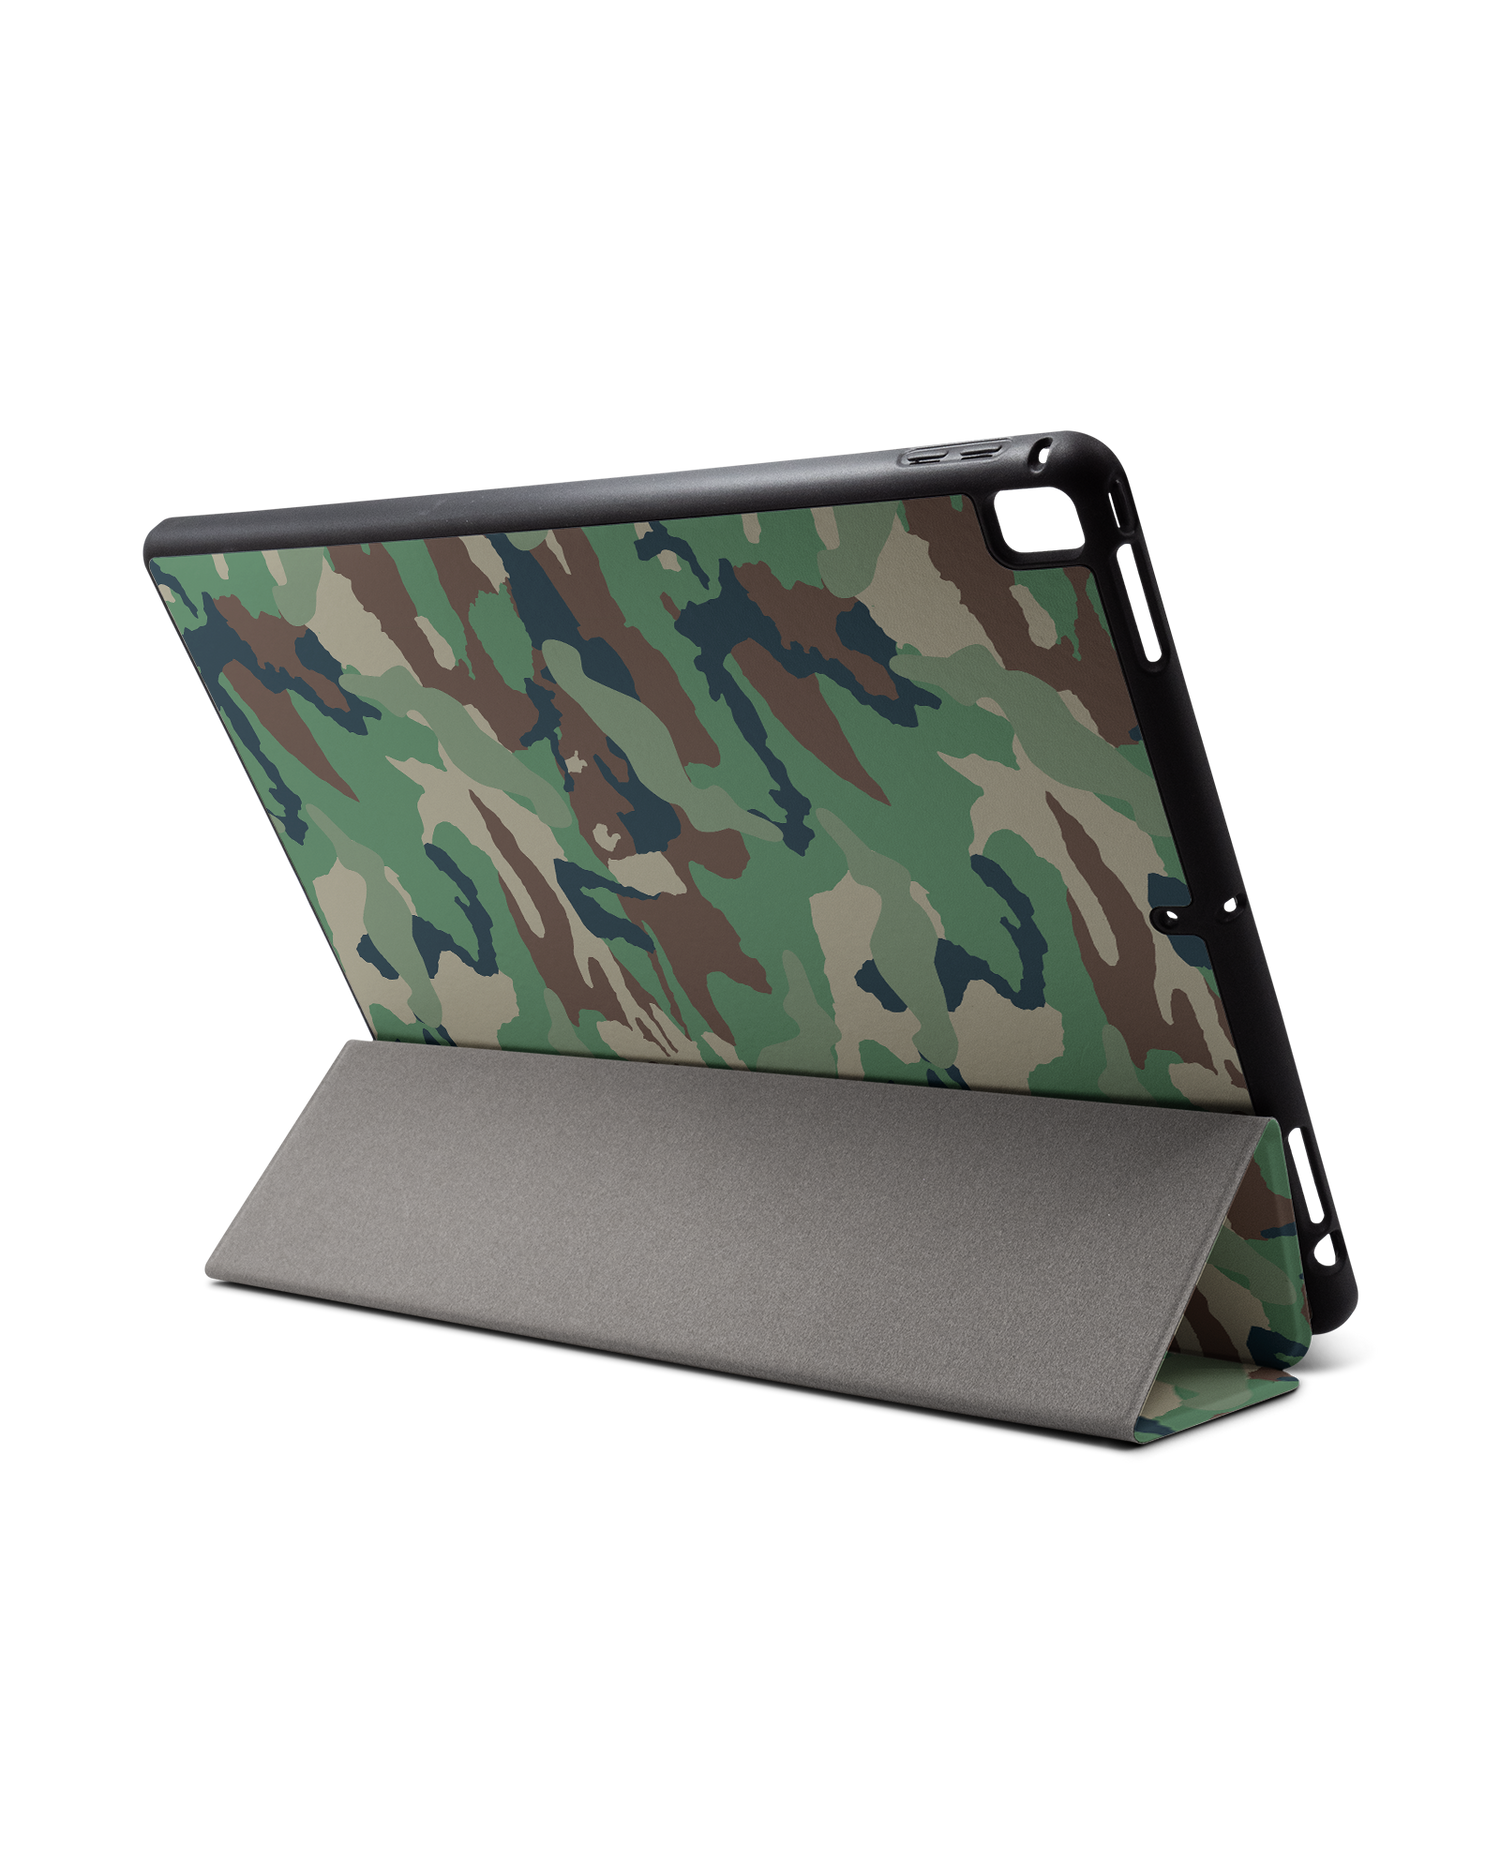 Green and Brown Camo iPad Hülle mit Stifthalter für Apple iPad Pro 2 12.9'' (2017): Aufgestellt im Querformat von hinten